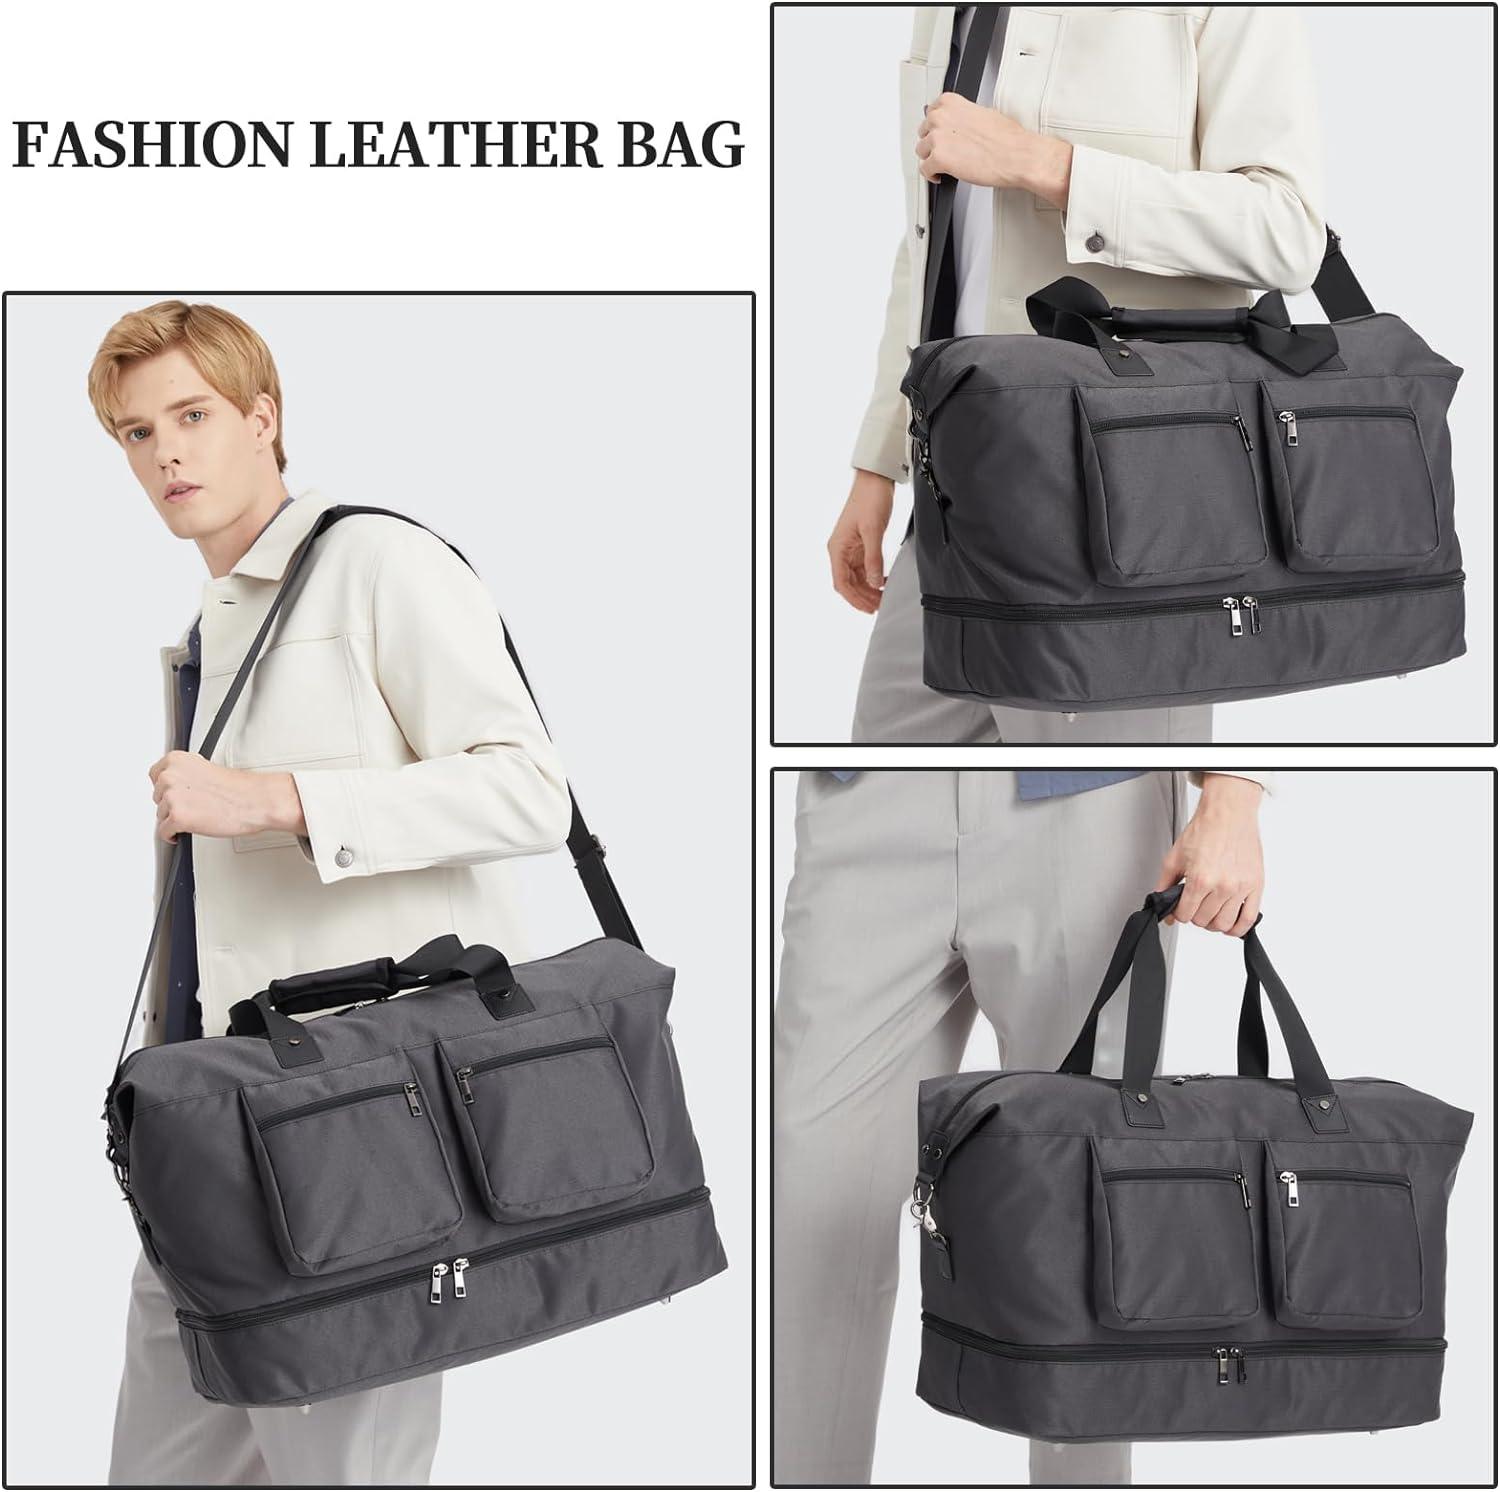 FR Fashion Co. 21" Men's Overnight Duffel Bag - FR Fashion Co. 